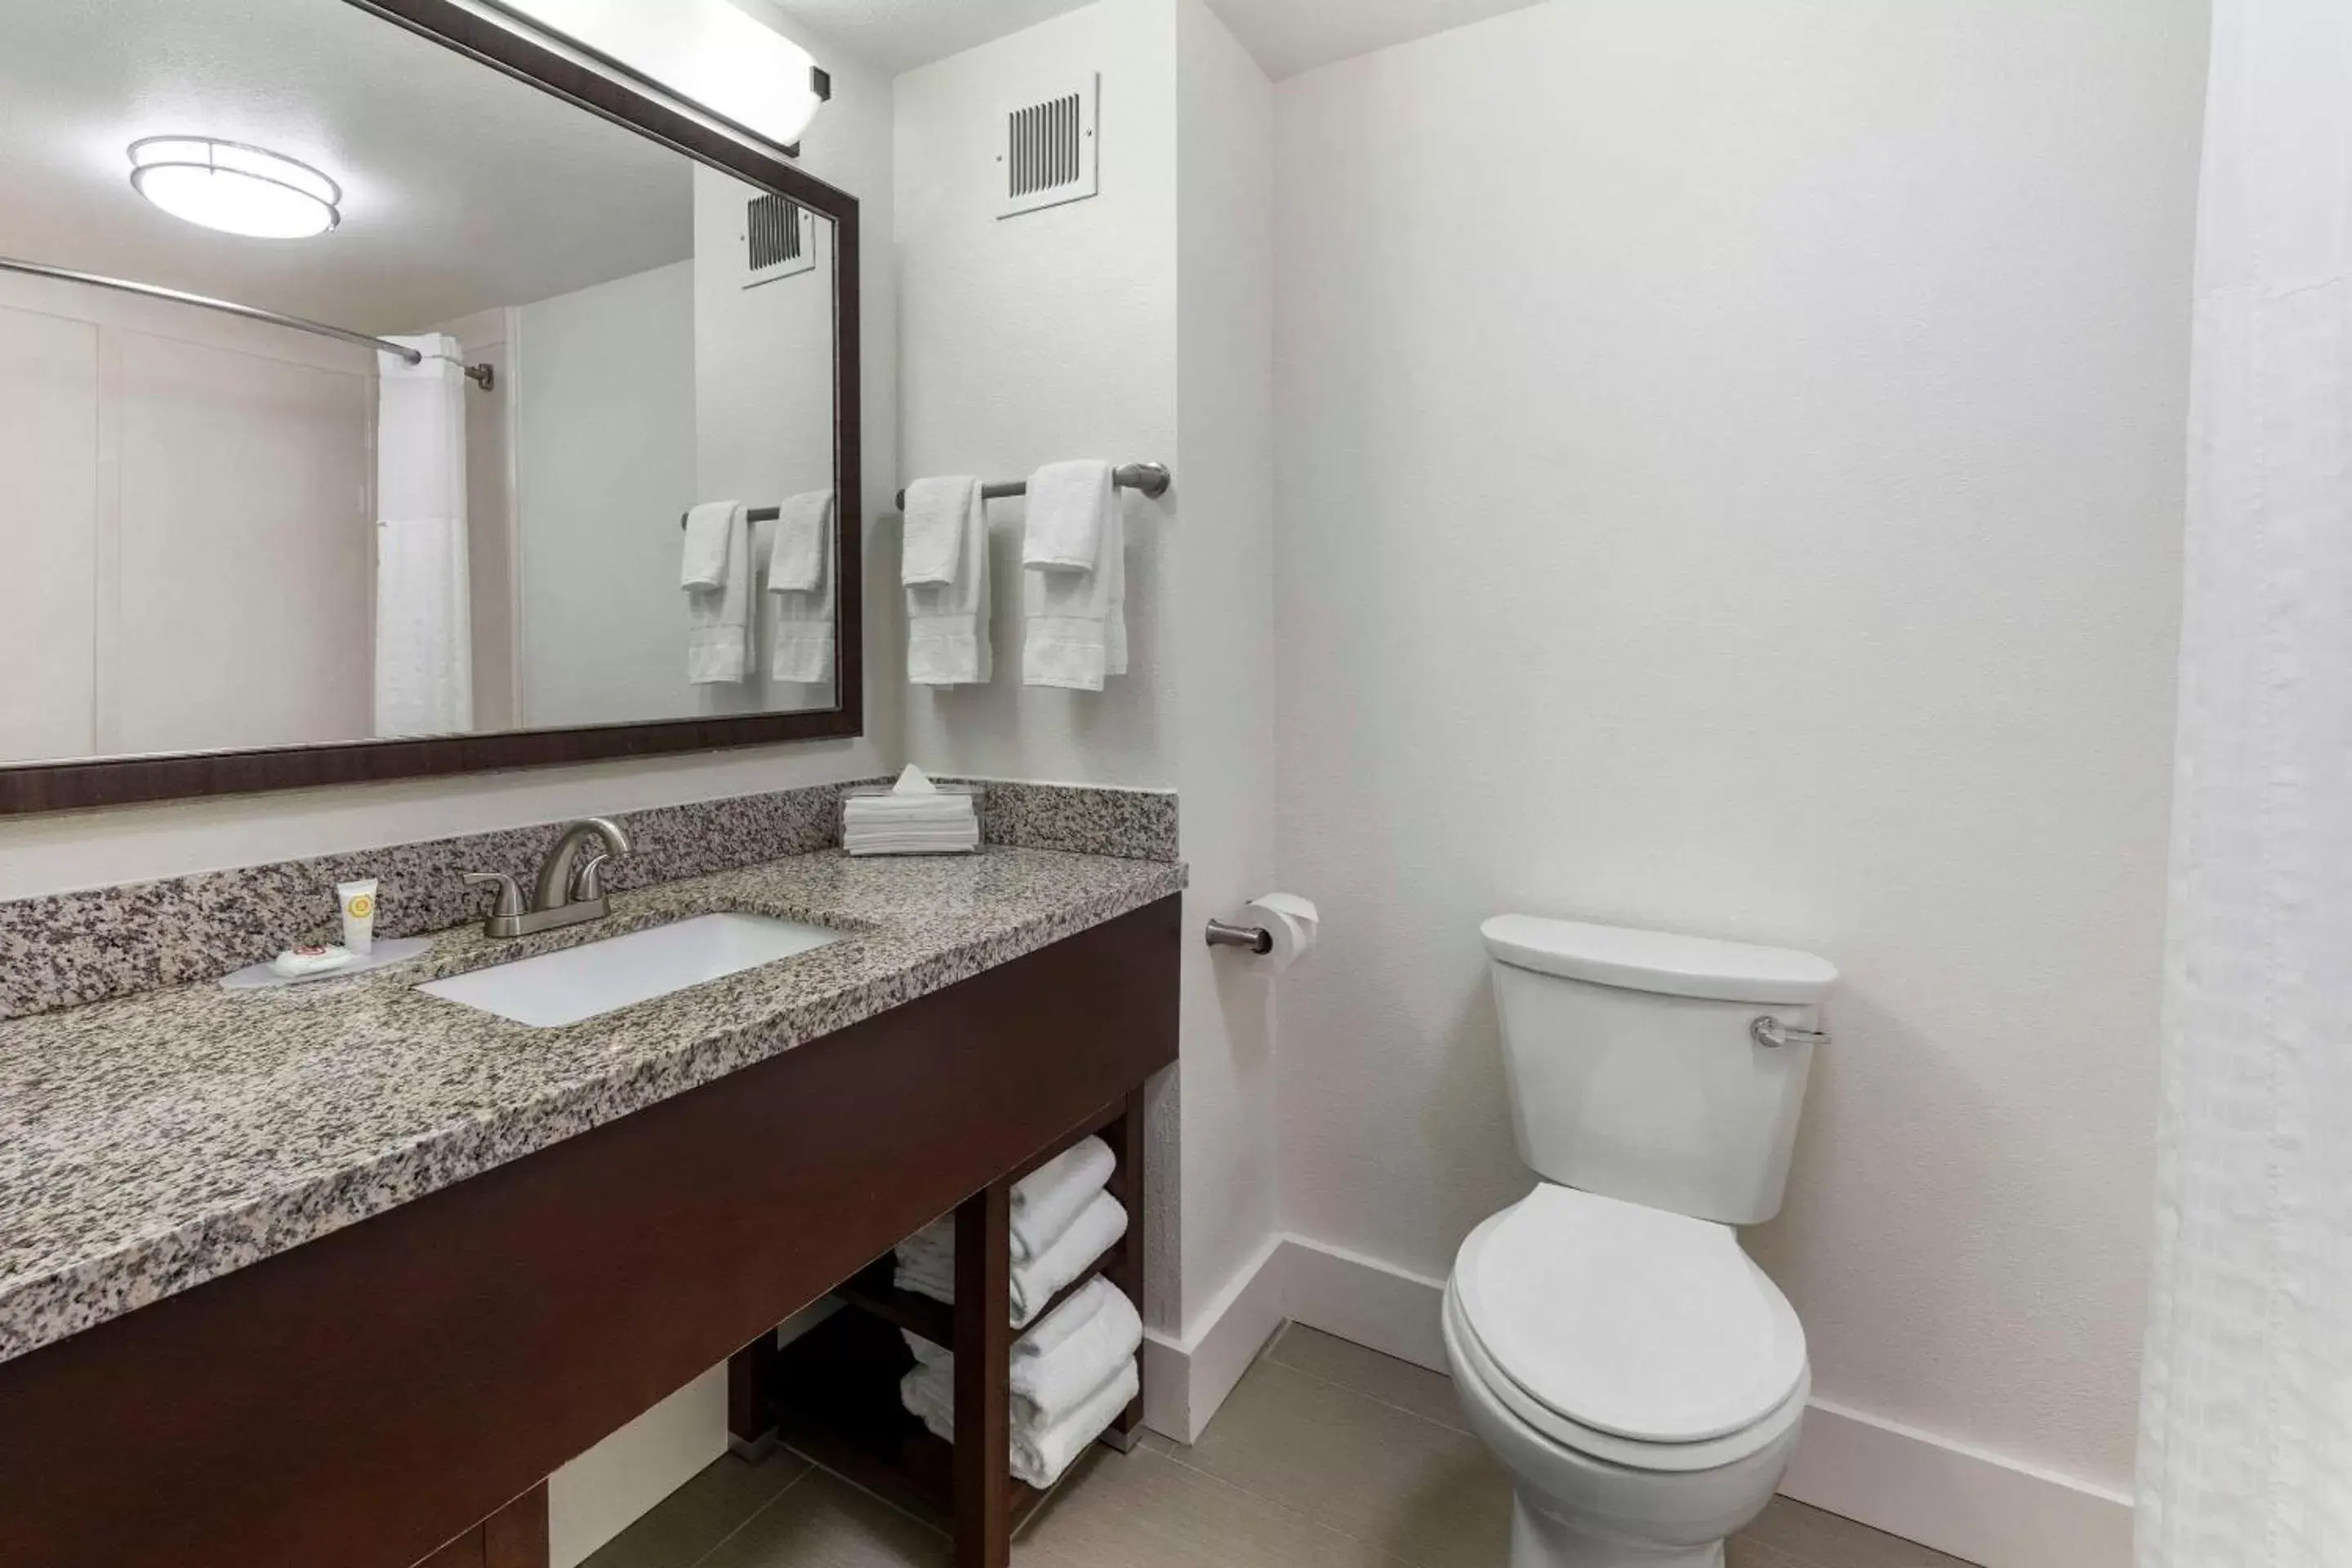 Bedroom, Bathroom in Comfort Suites Tulare